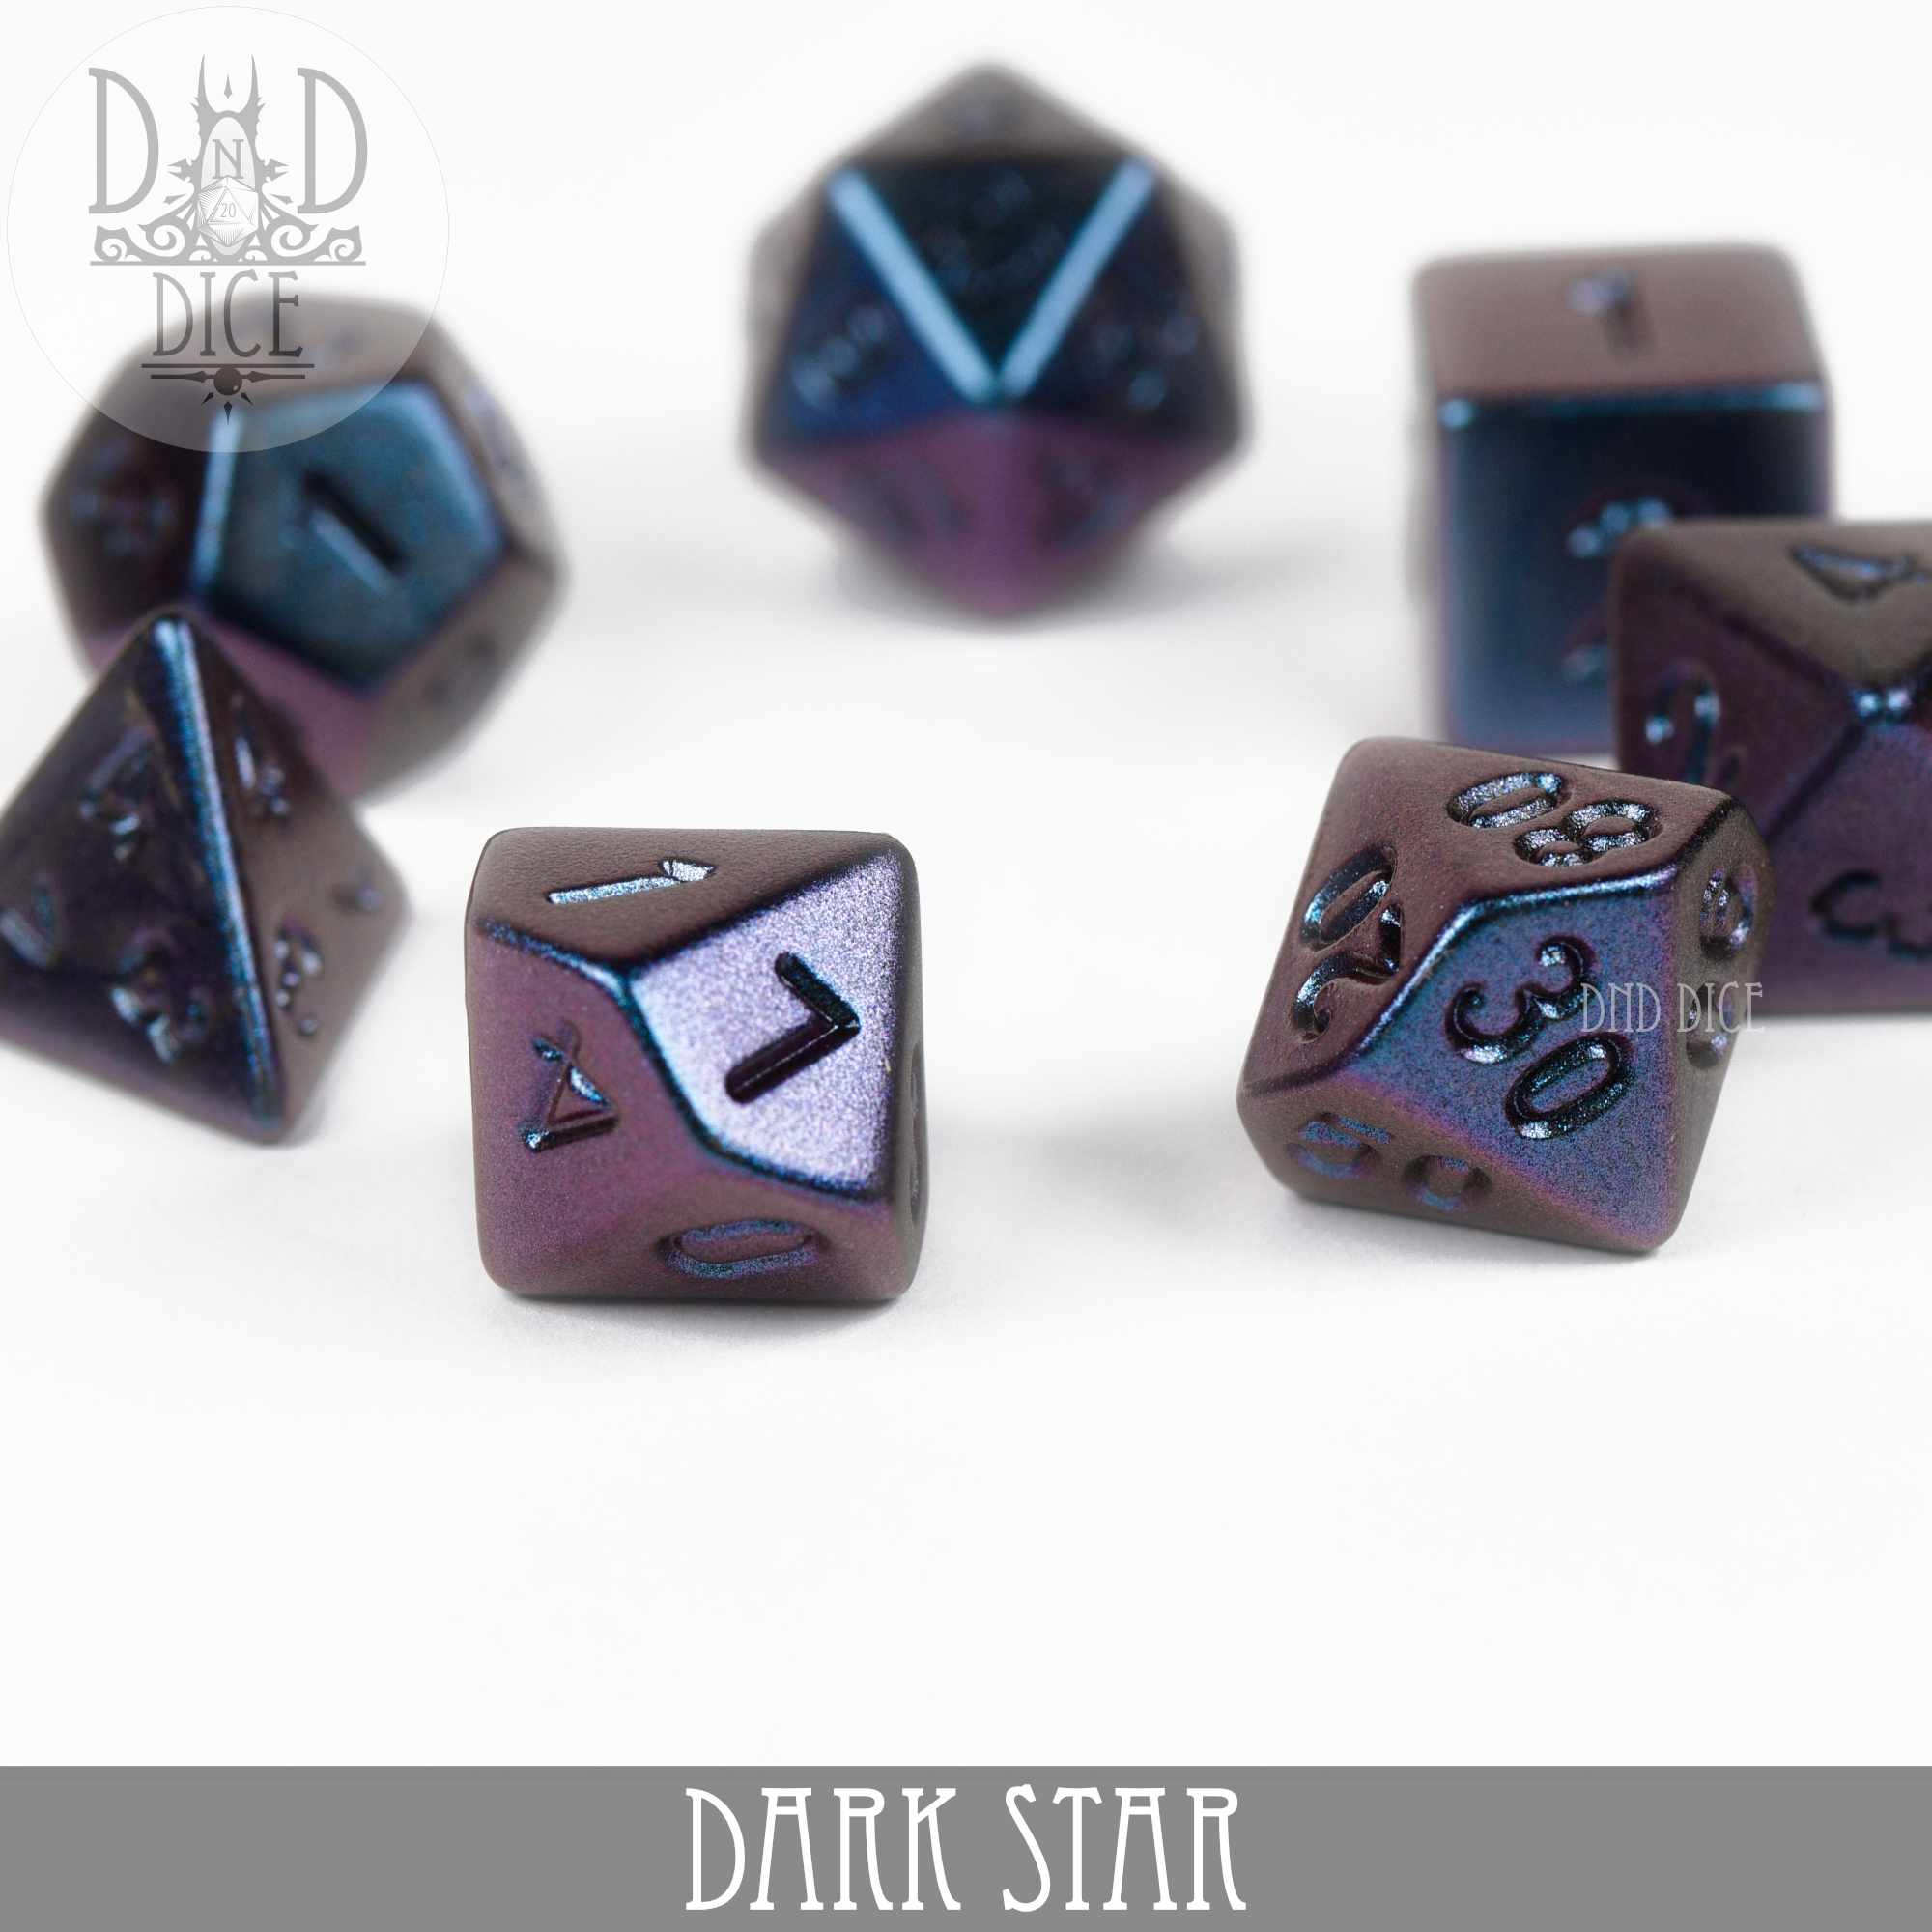 Dark Star Dice Set